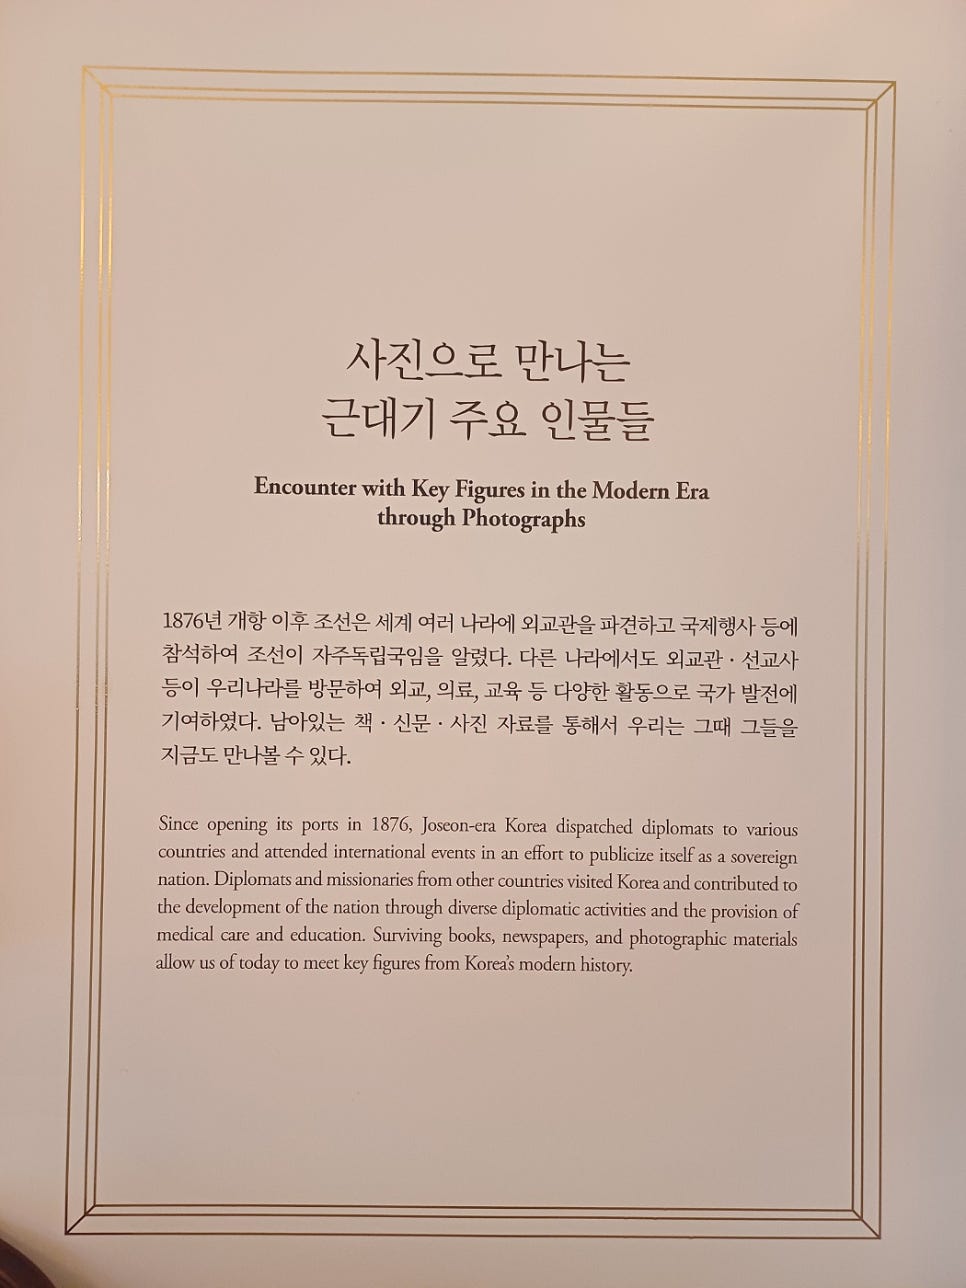 [덕수궁 돈덕전]-국봉, 소장유물 특별전/24년5월 서울무료전시